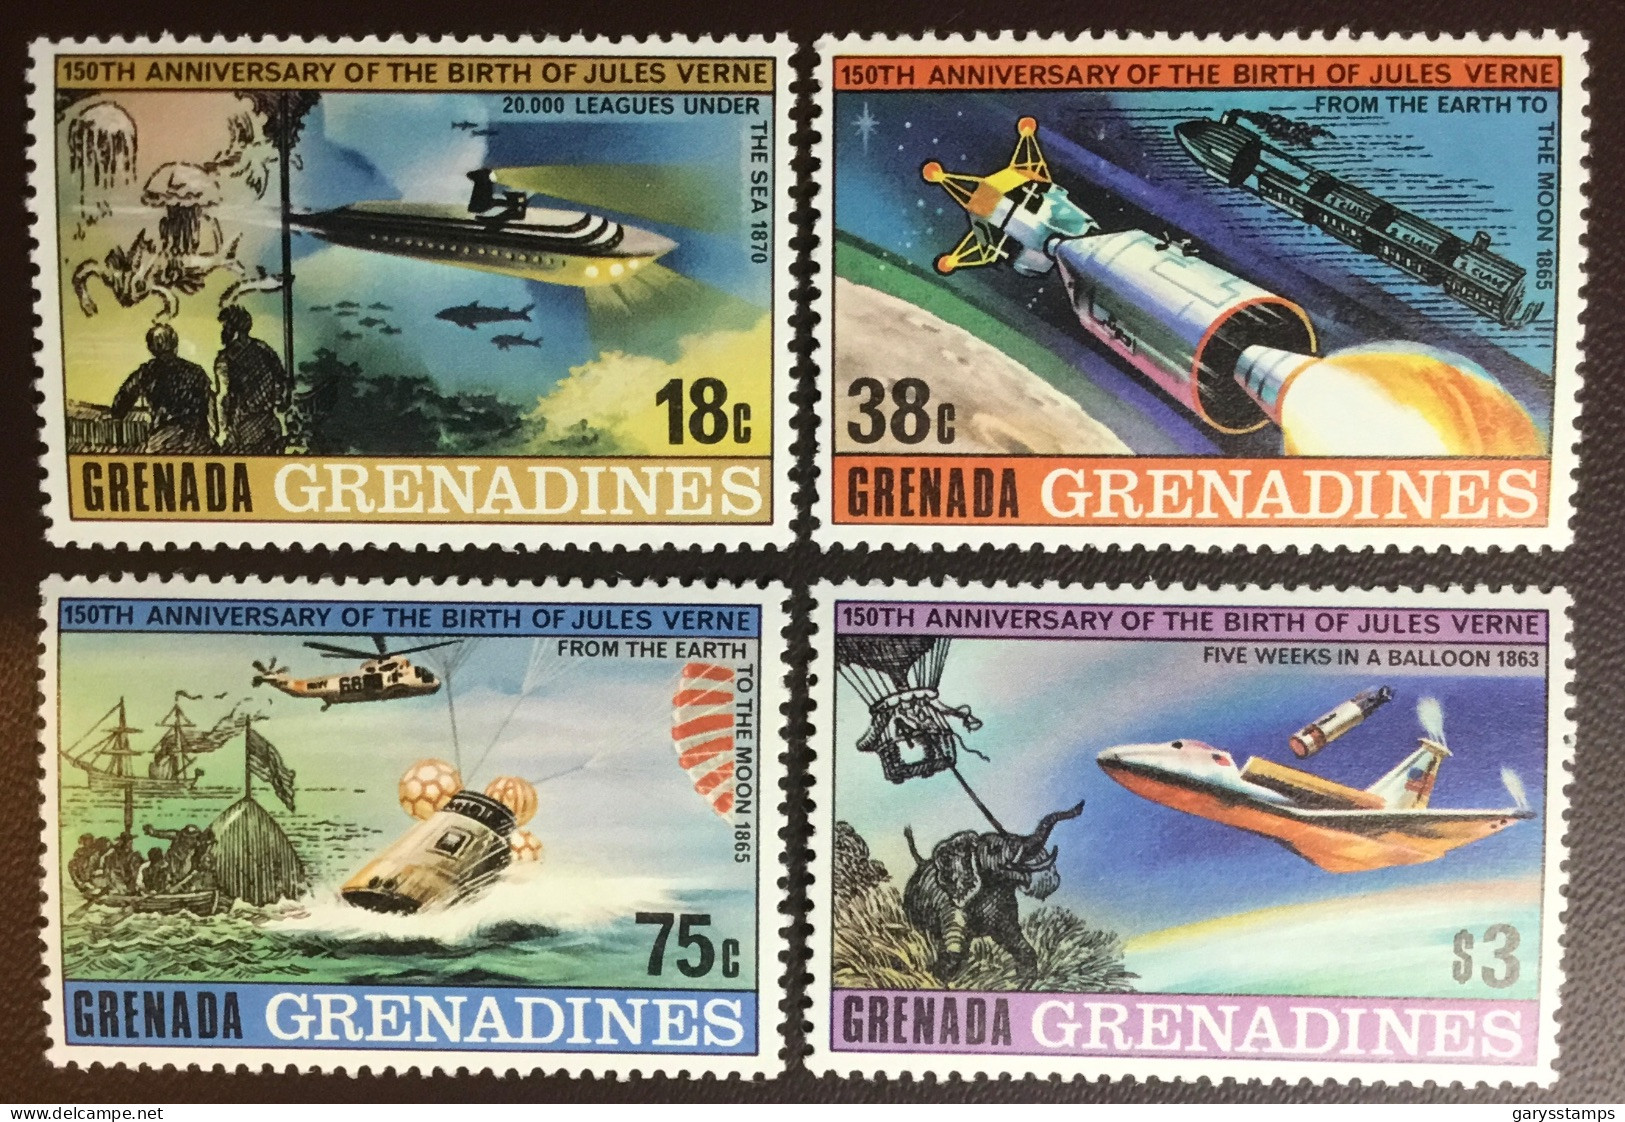 Grenada Grenadines 1979 Jules Verne Anniversary MNH - Grenade (1974-...)